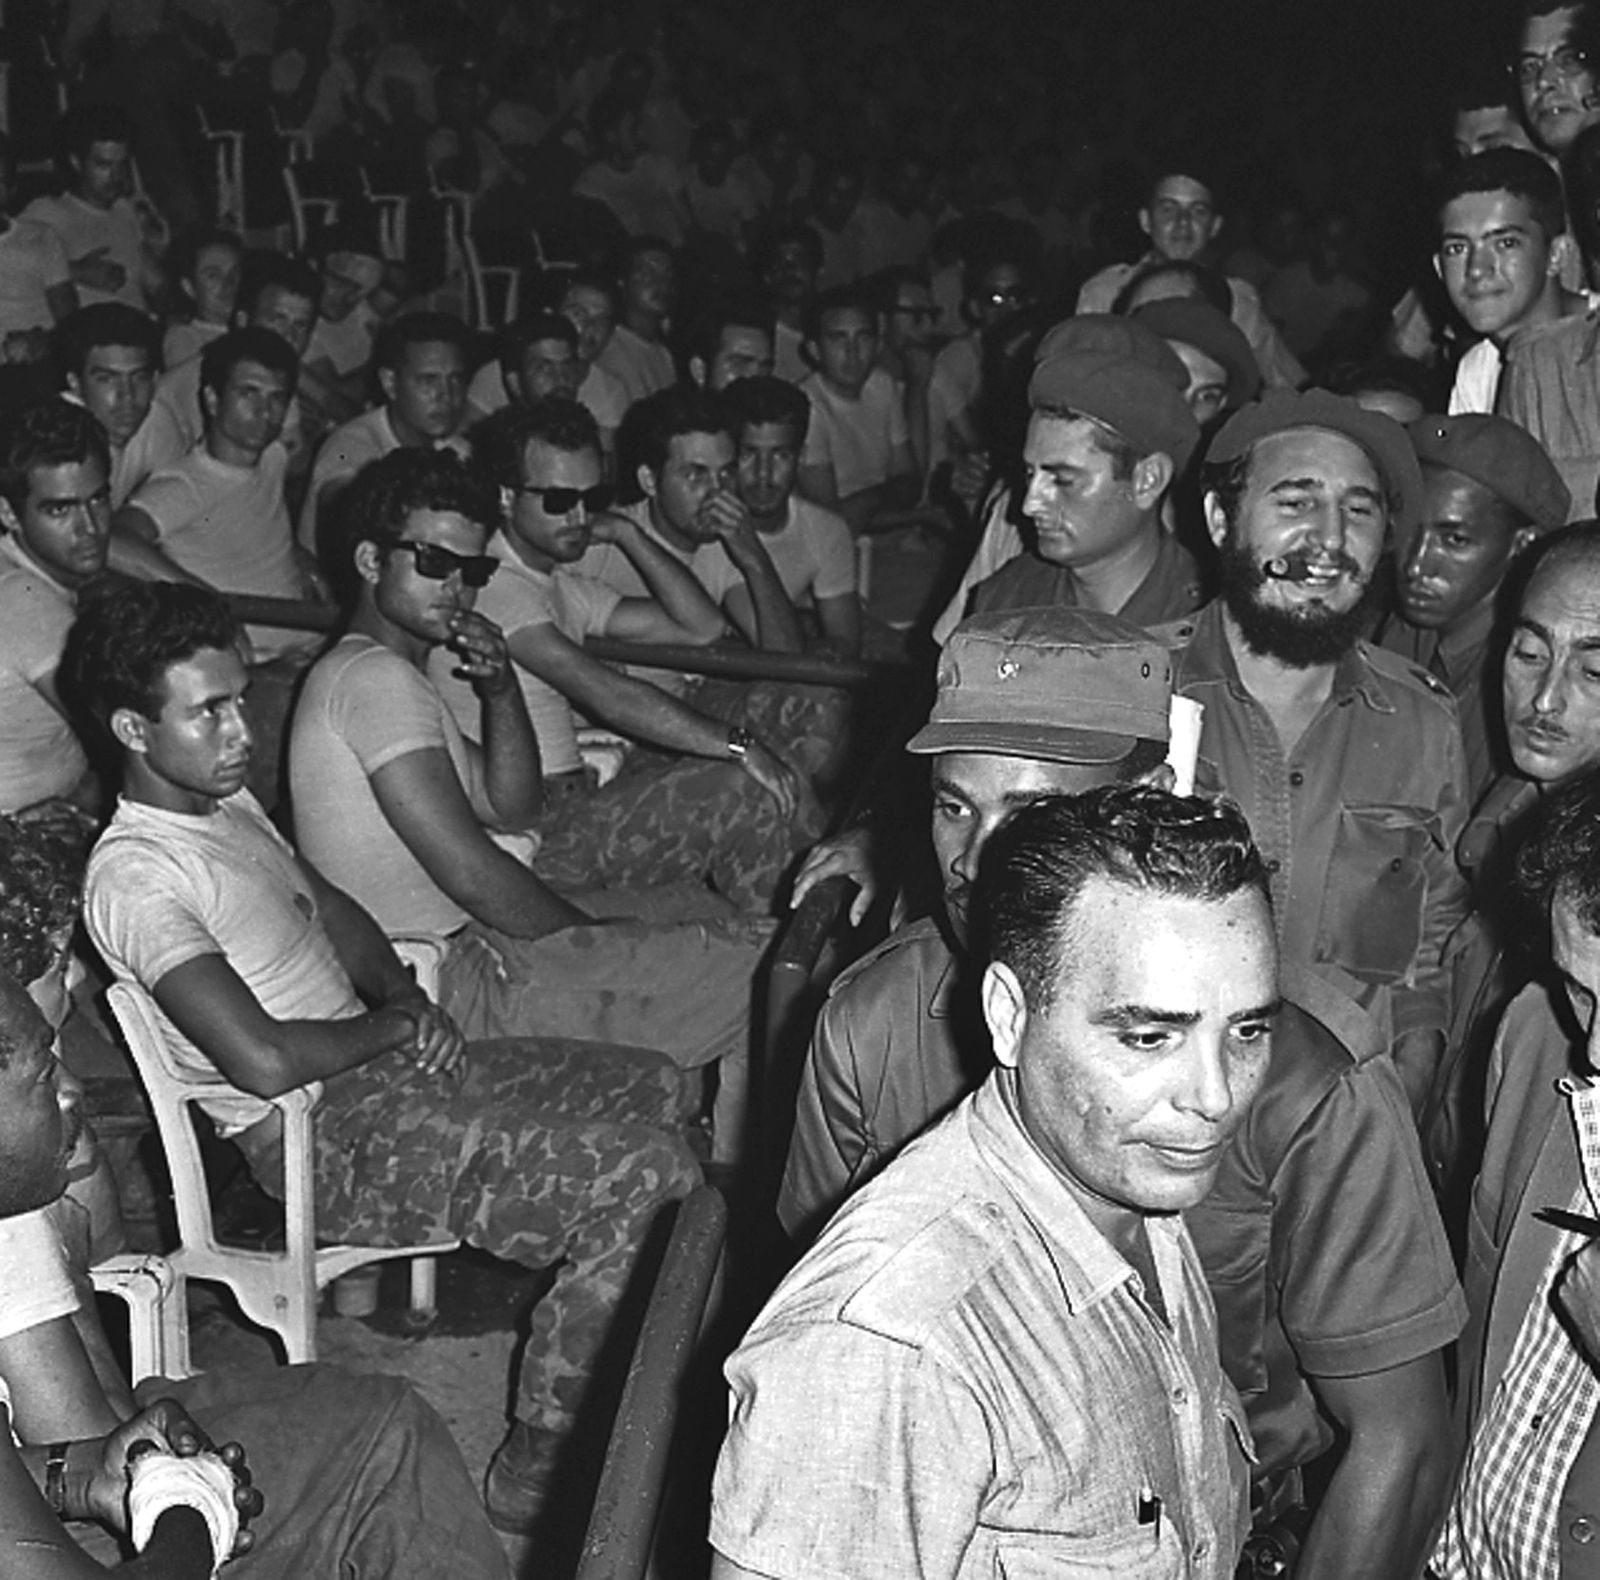 الزعيم الكوبي الراحل فيدل كاسترو خلال محاكمة علنية في هافانا لأسرى شاركوا في الغزو الفاشل لخليج الخنازير - أبريل 1961 - REUTERS